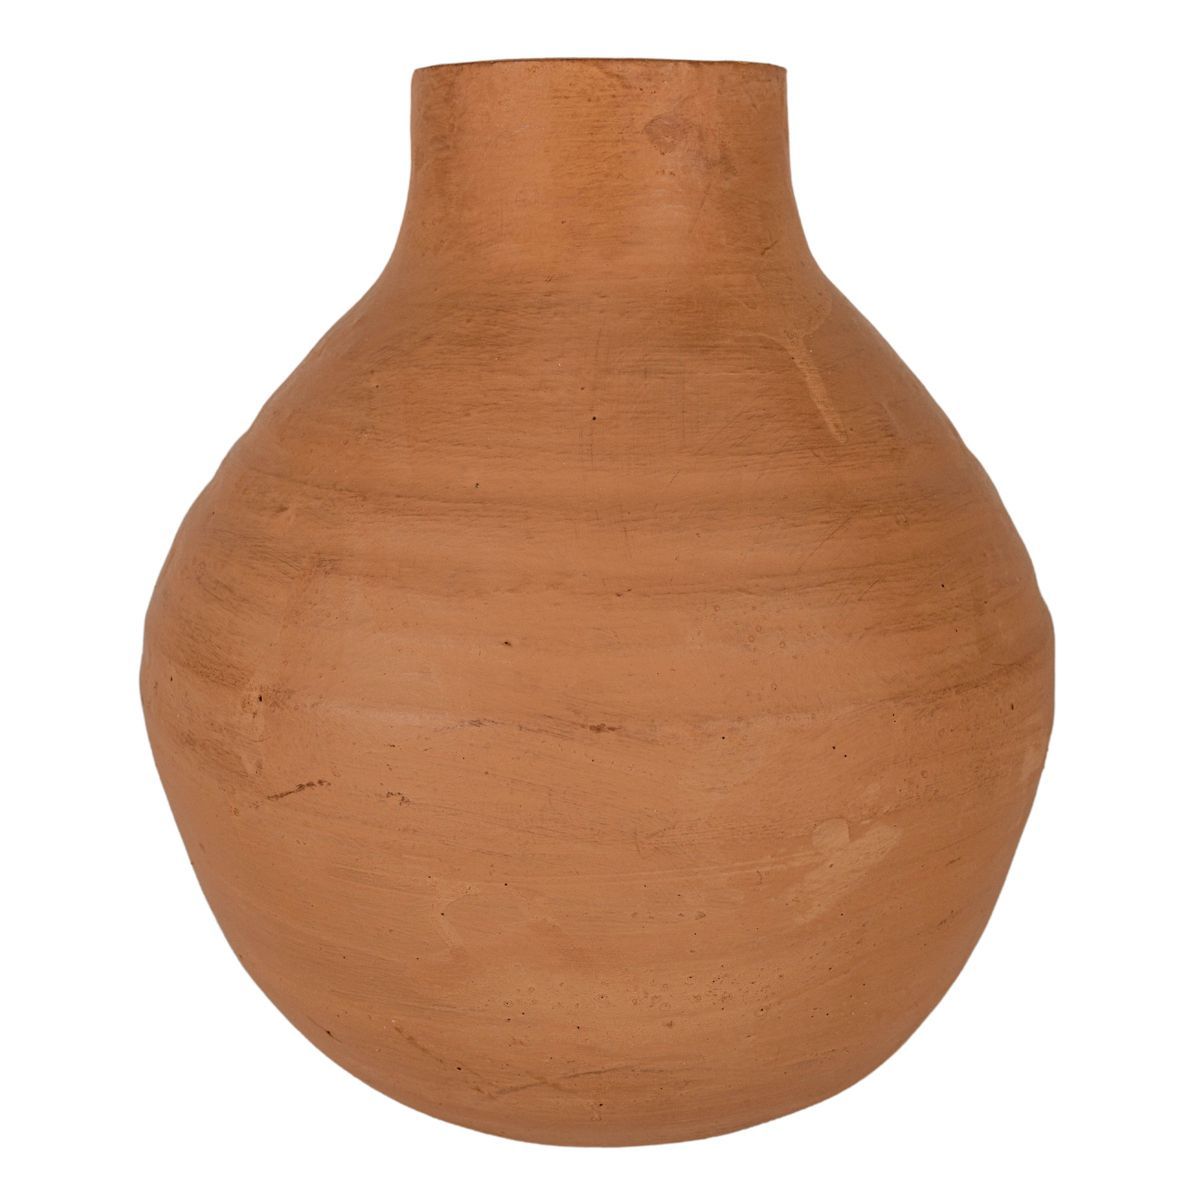 Natural Terracotta Vase - Foreside Home & Garden | Target